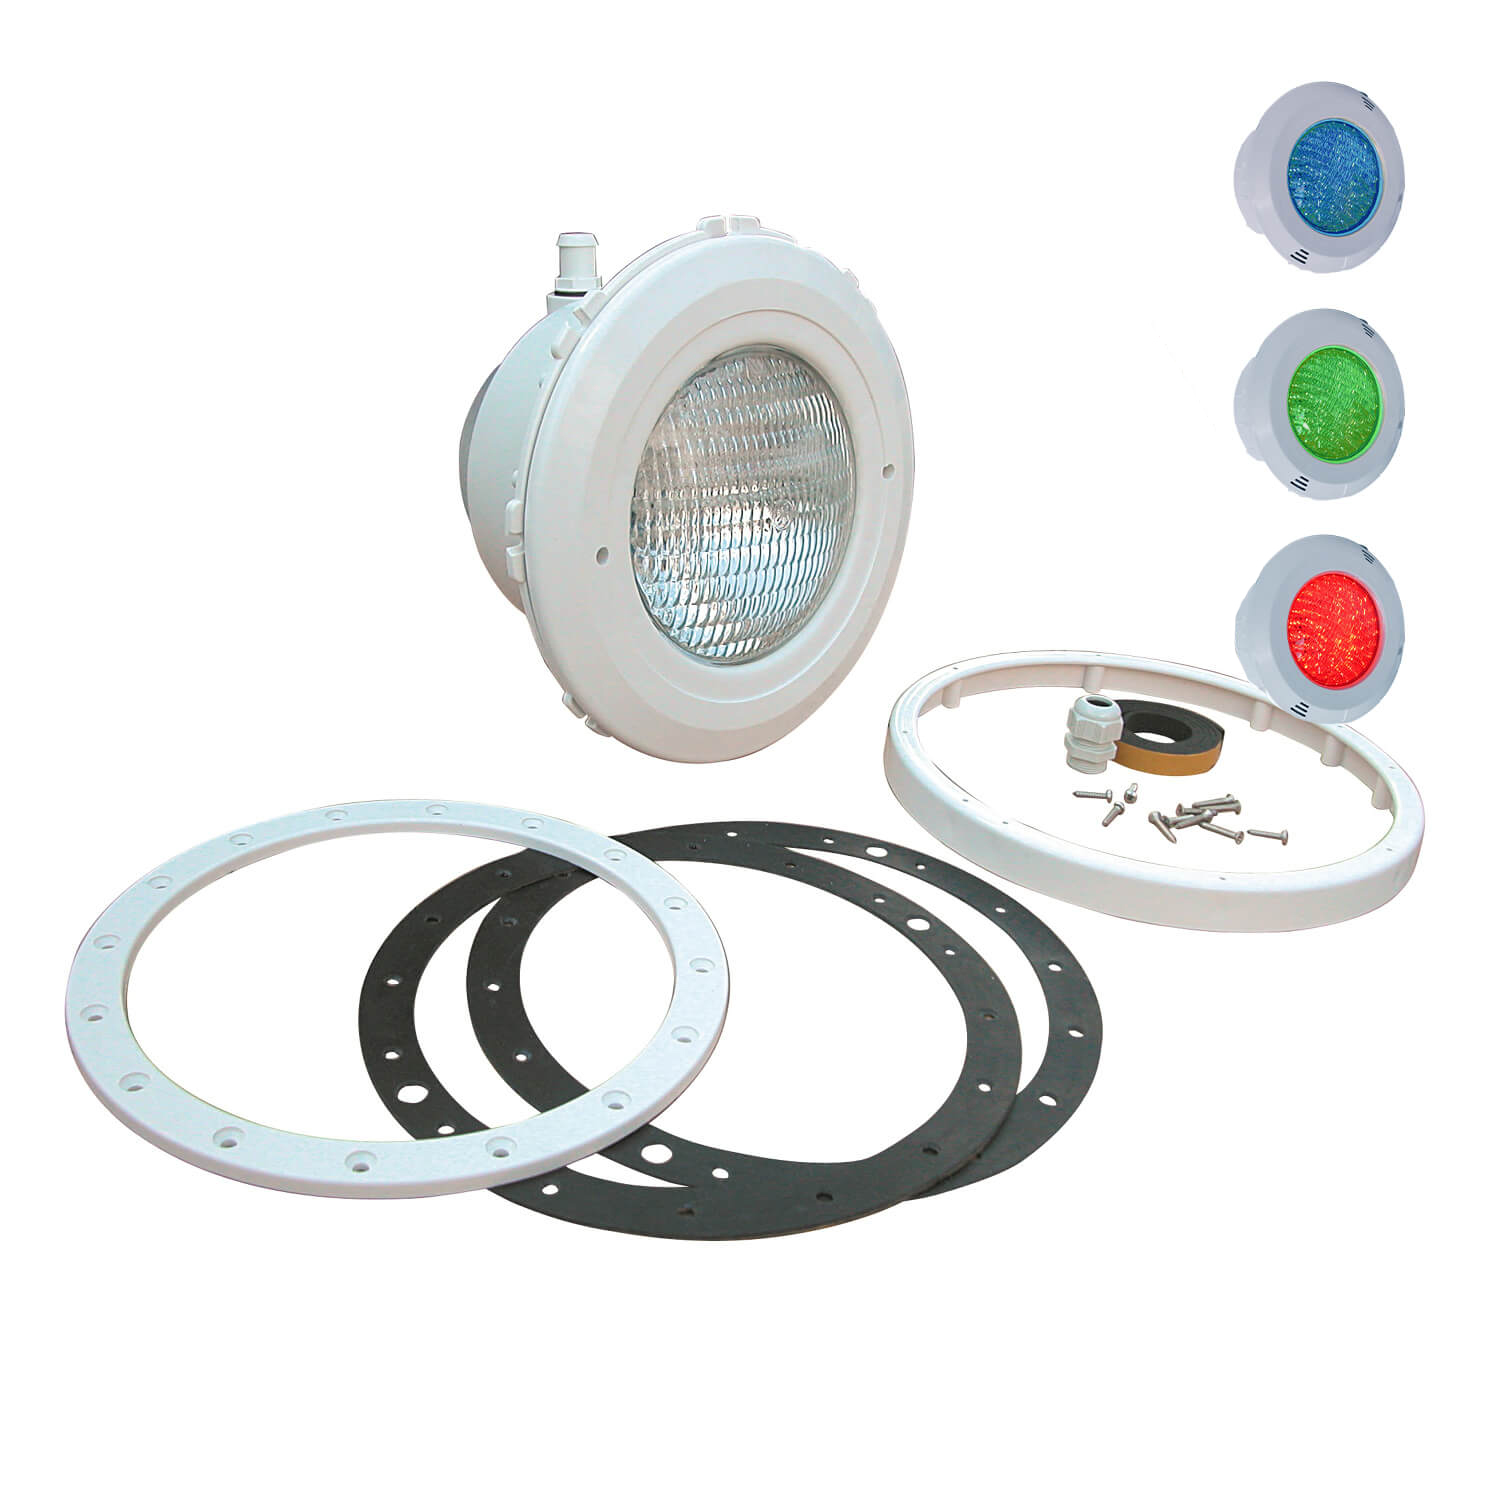 OKU LED Unterwasserscheinwerfer für Folienbecken 30 Watt Lichtfarbe RGB